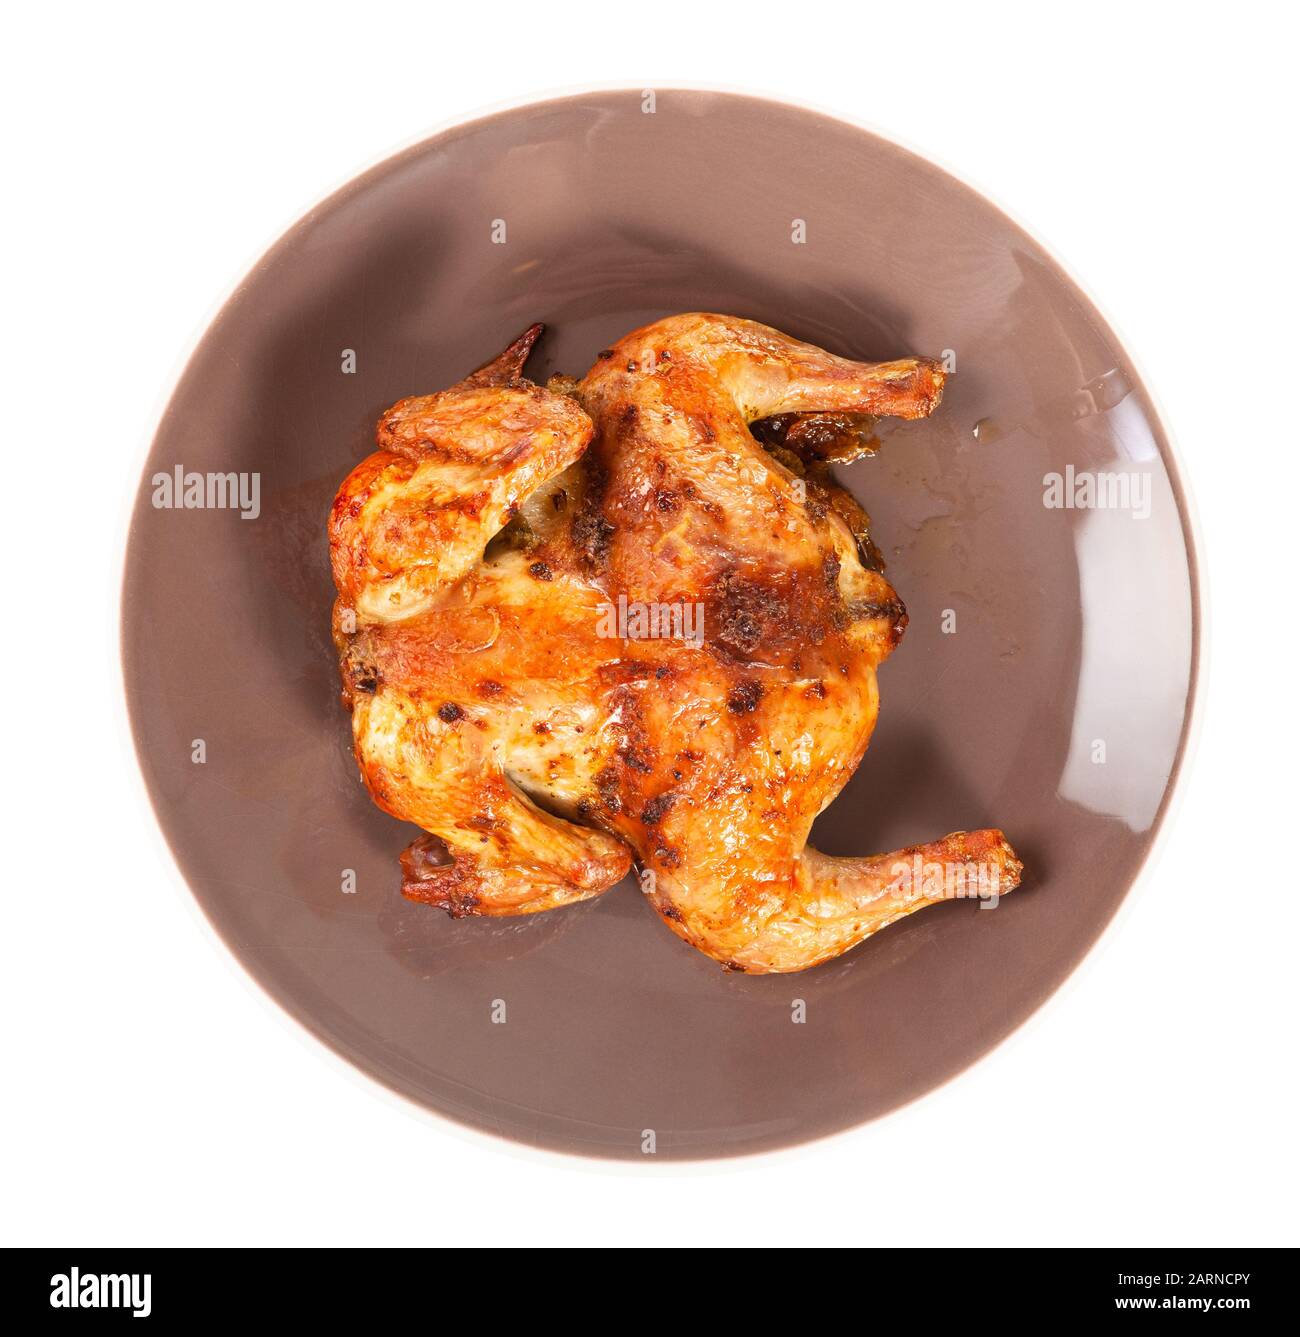 Draufsicht des gebratenen ganzen abgeflachten Hühnchens auf brauner Platte isoliert auf weißem Grund Stockfoto